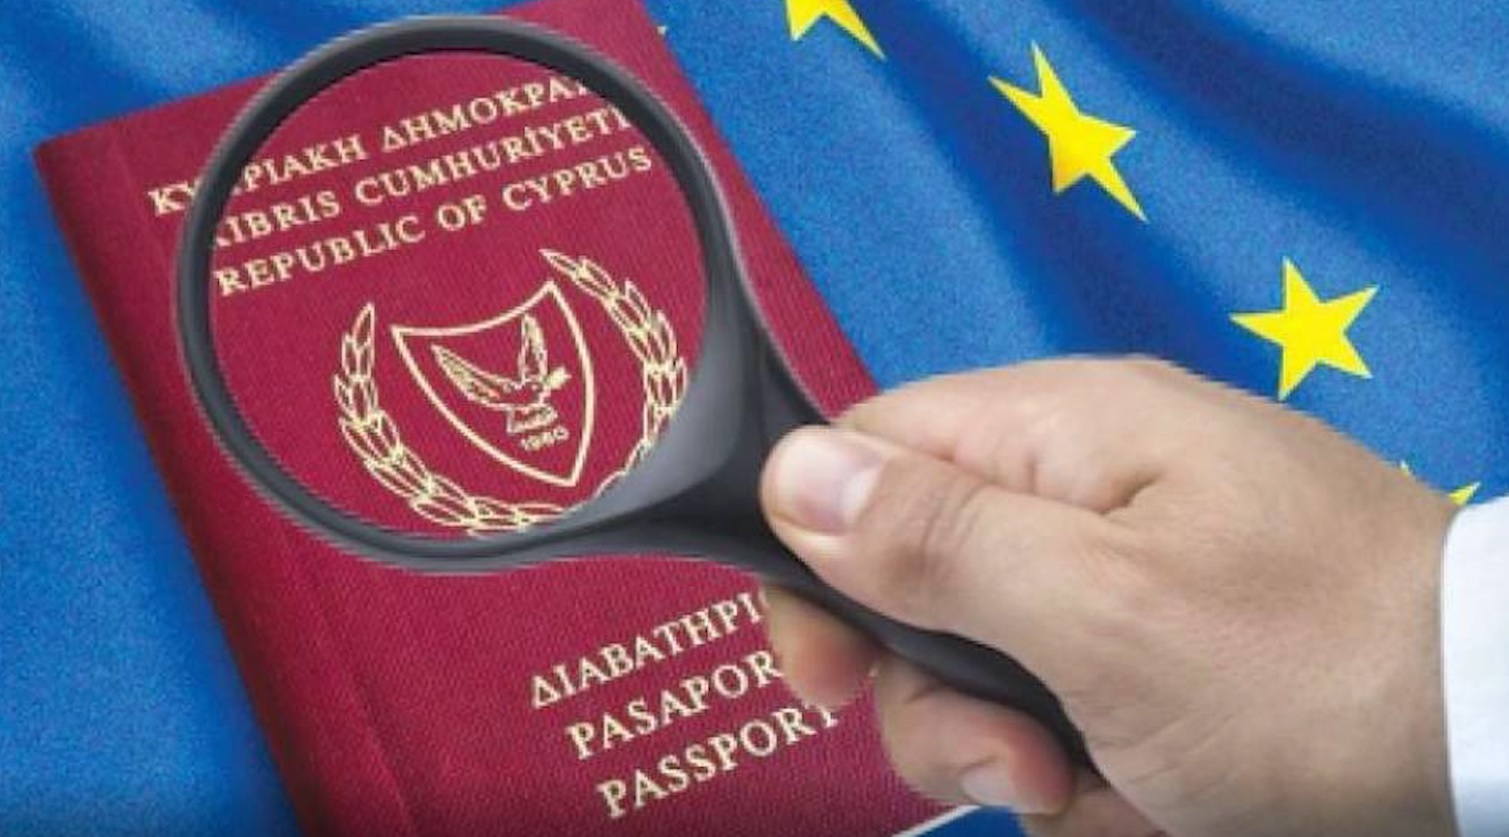 साइप्रसले रातो पासपोर्ट दुरुपयोग गरेको खुलासा